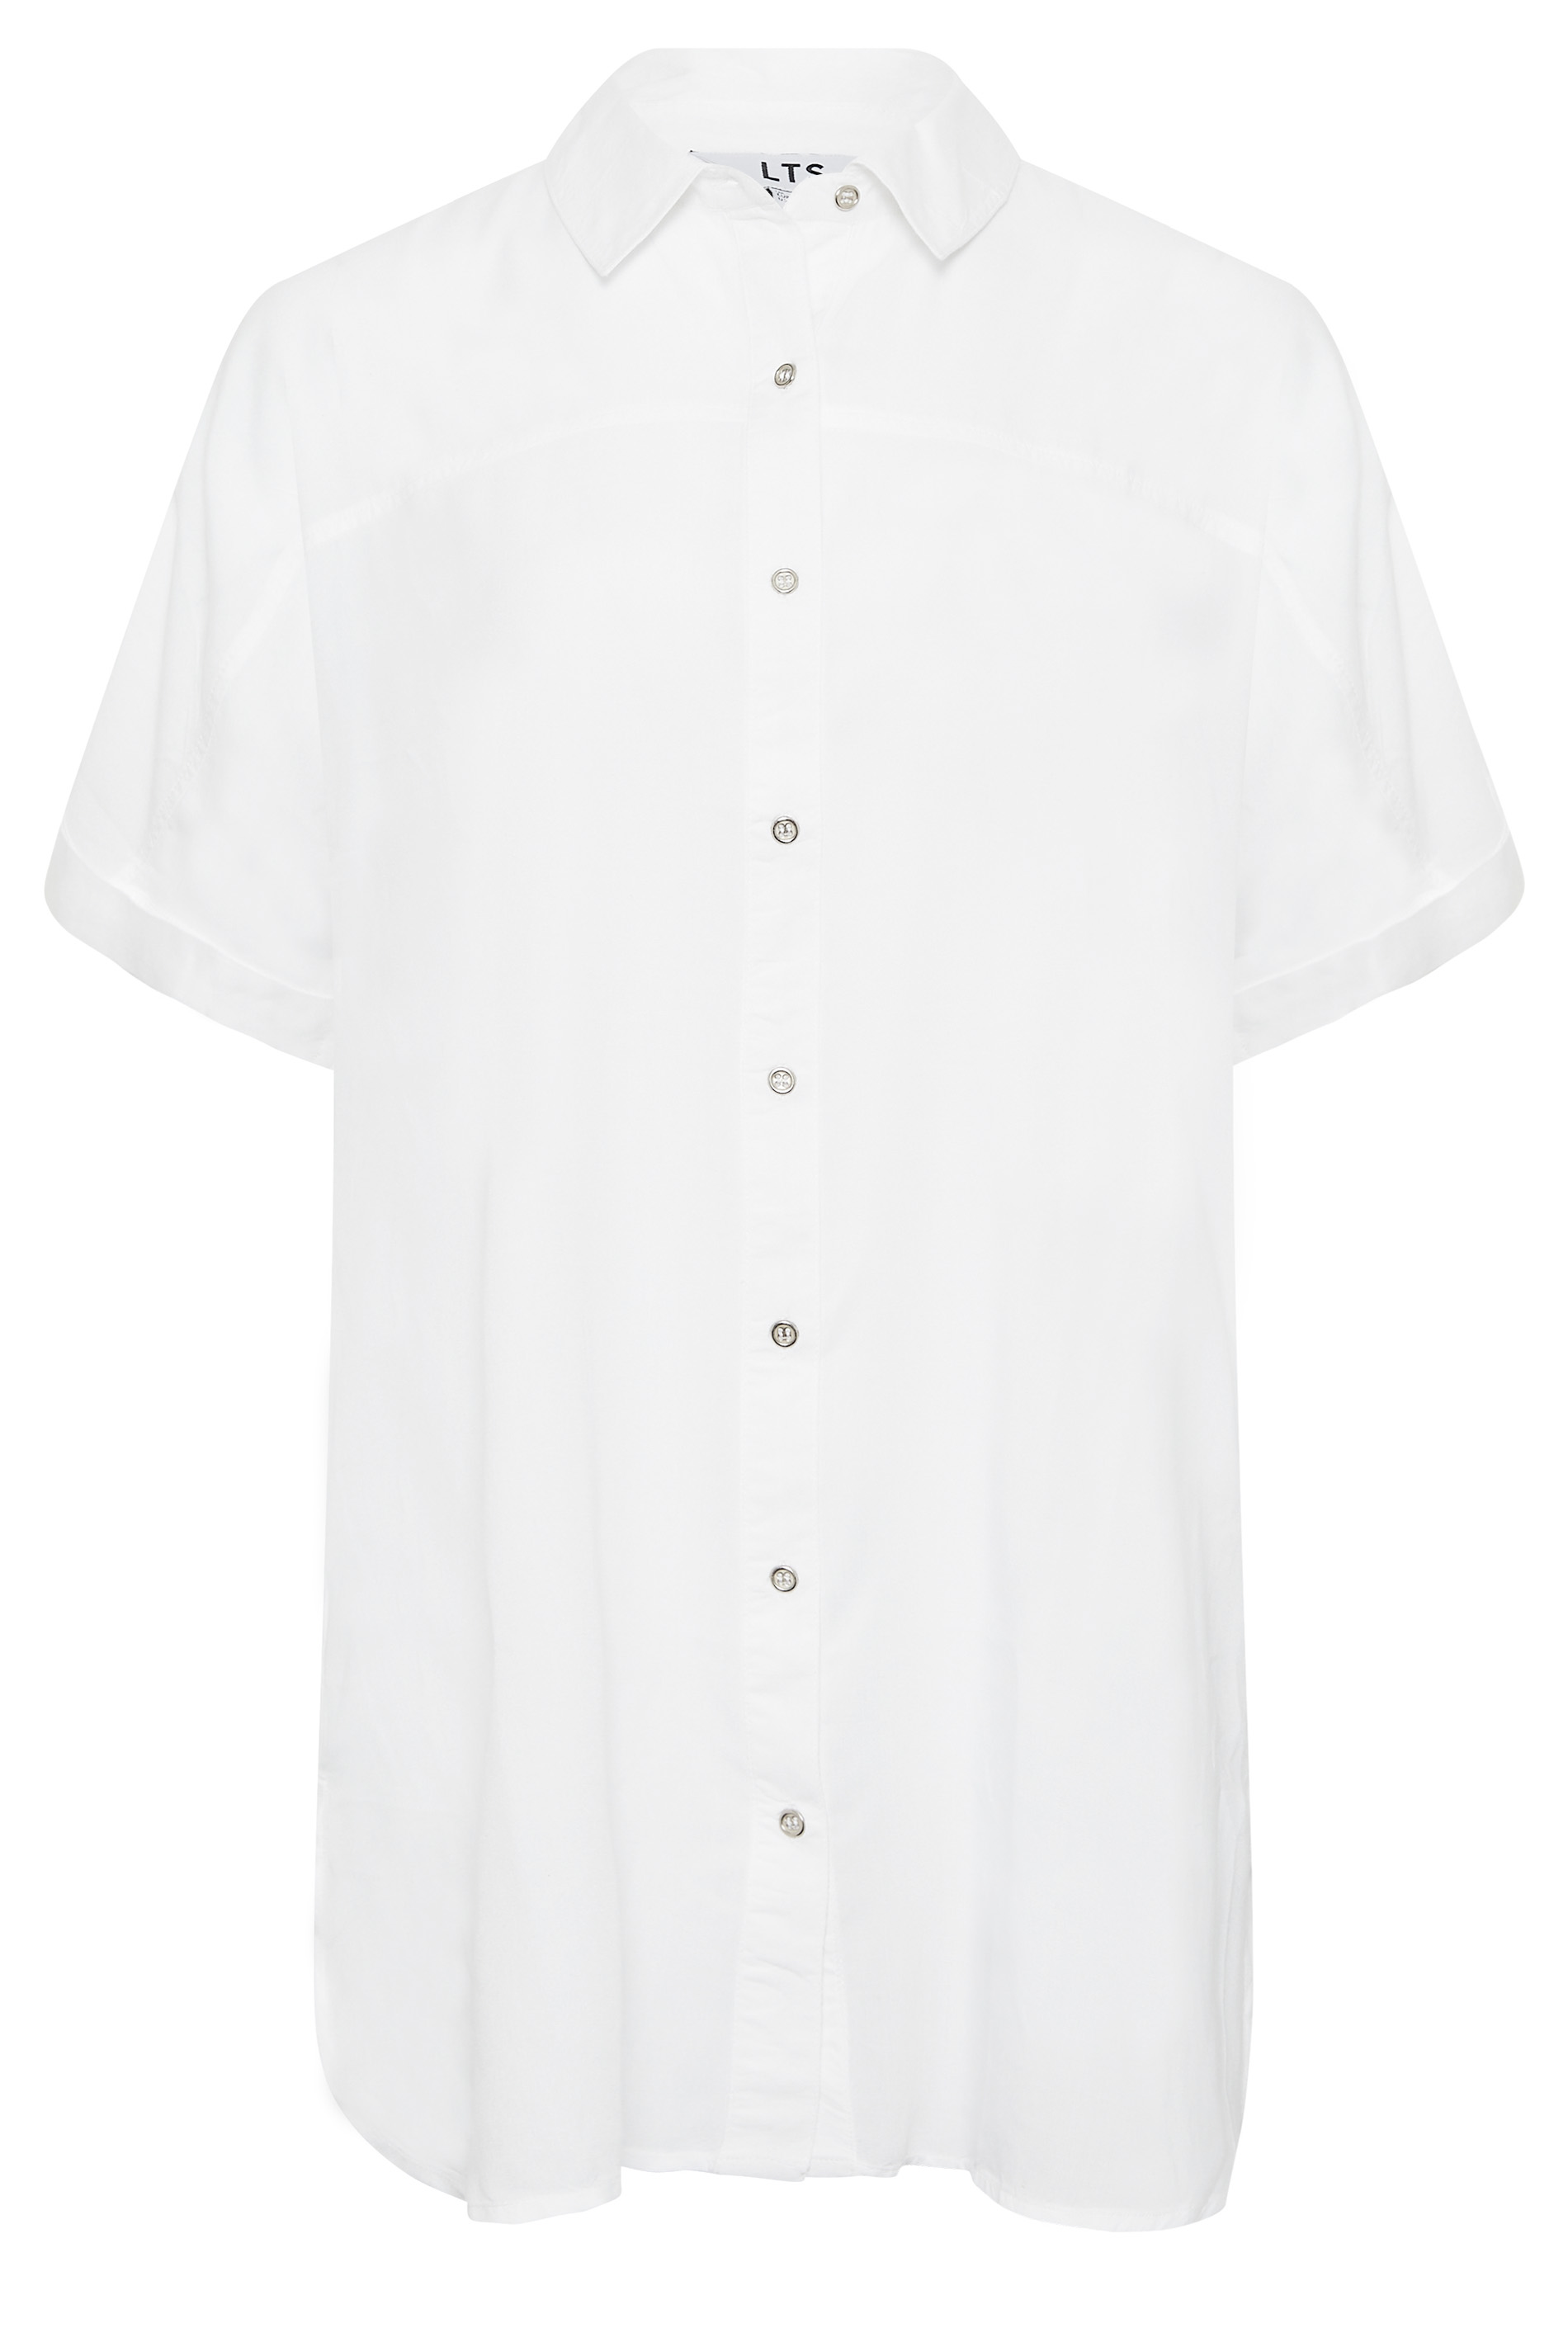 LTS Tall Women's White Short Sleeve Shirt | Long Tall Sally 2